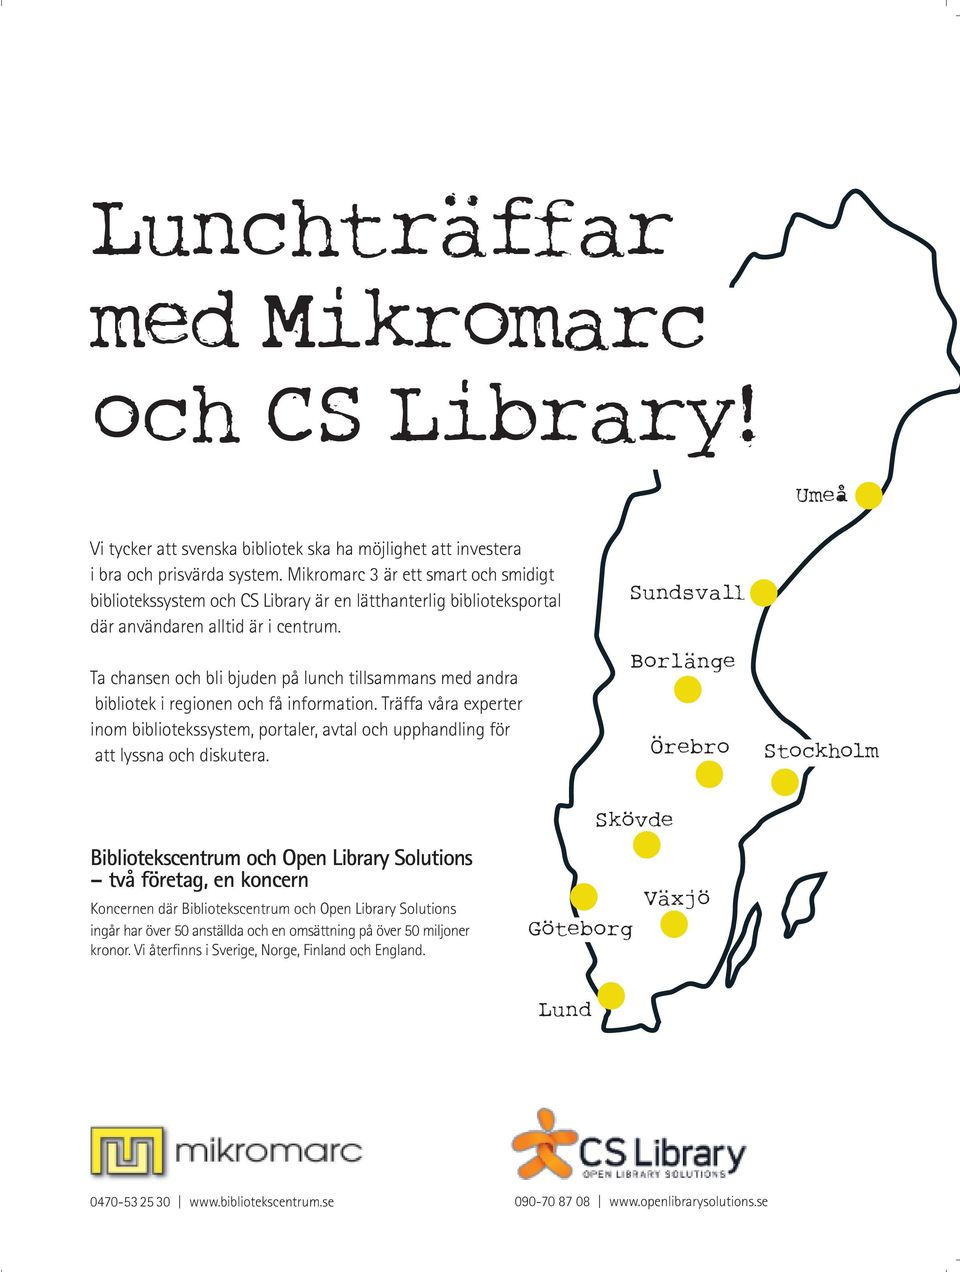 Ta chansen och bli bjuden på lunch tillsammans med andra bibliotek i regionen och få information.